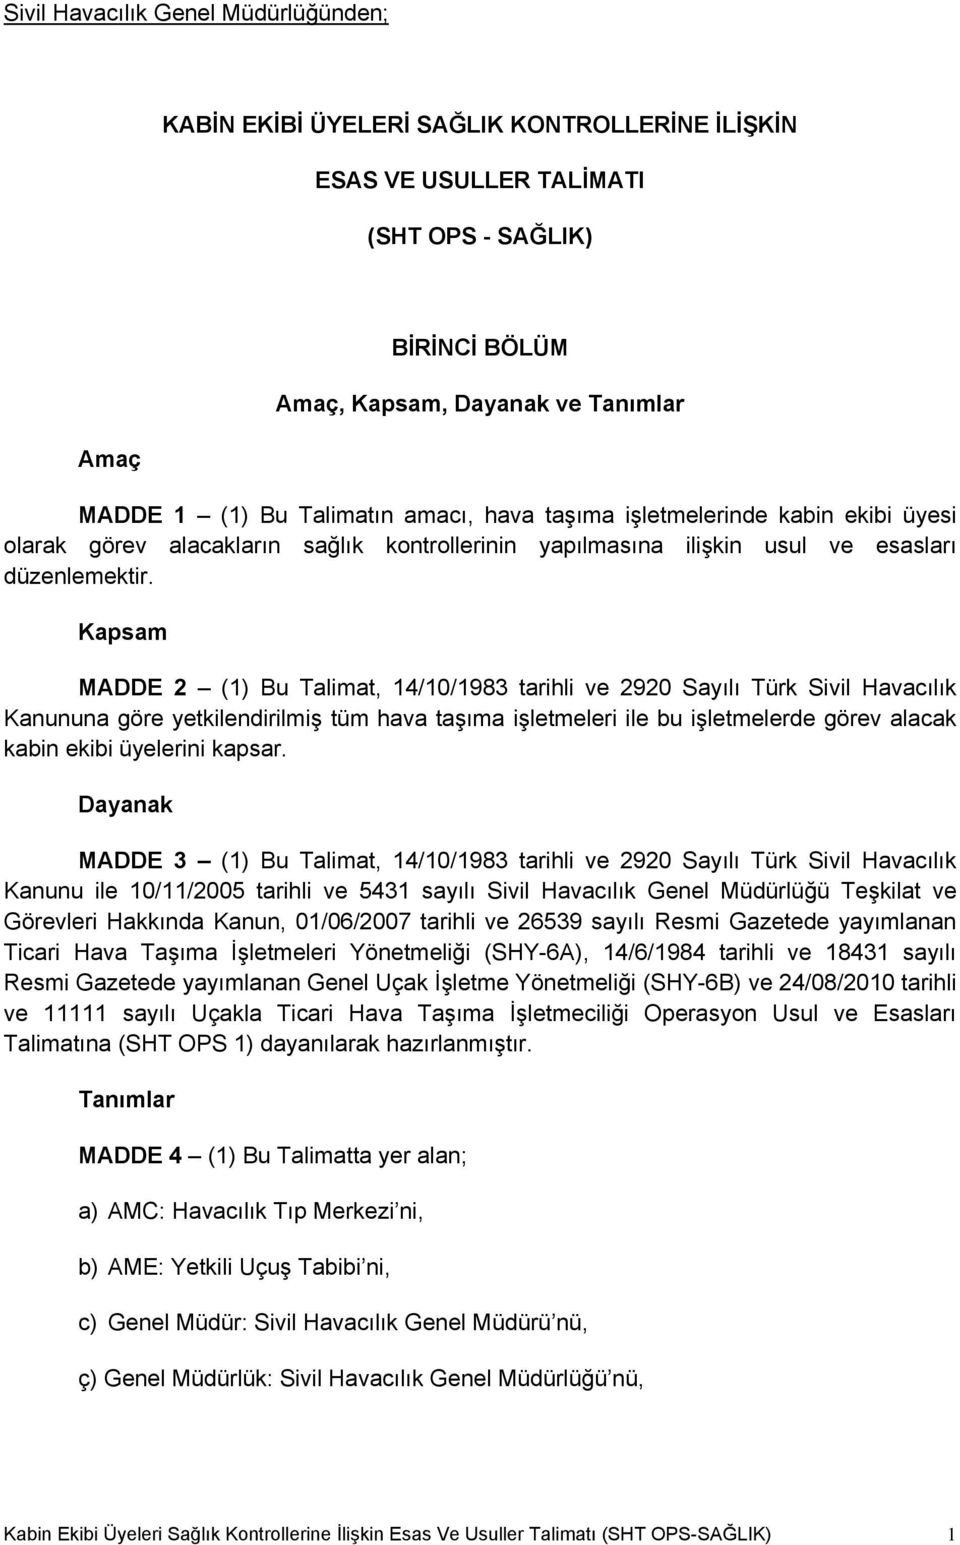 Kapsam MADDE 2 (1) Bu Talimat, 14/10/1983 tarihli ve 2920 Sayılı Türk Sivil Havacılık Kanununa göre yetkilendirilmiş tüm hava taşıma işletmeleri ile bu işletmelerde görev alacak kabin ekibi üyelerini